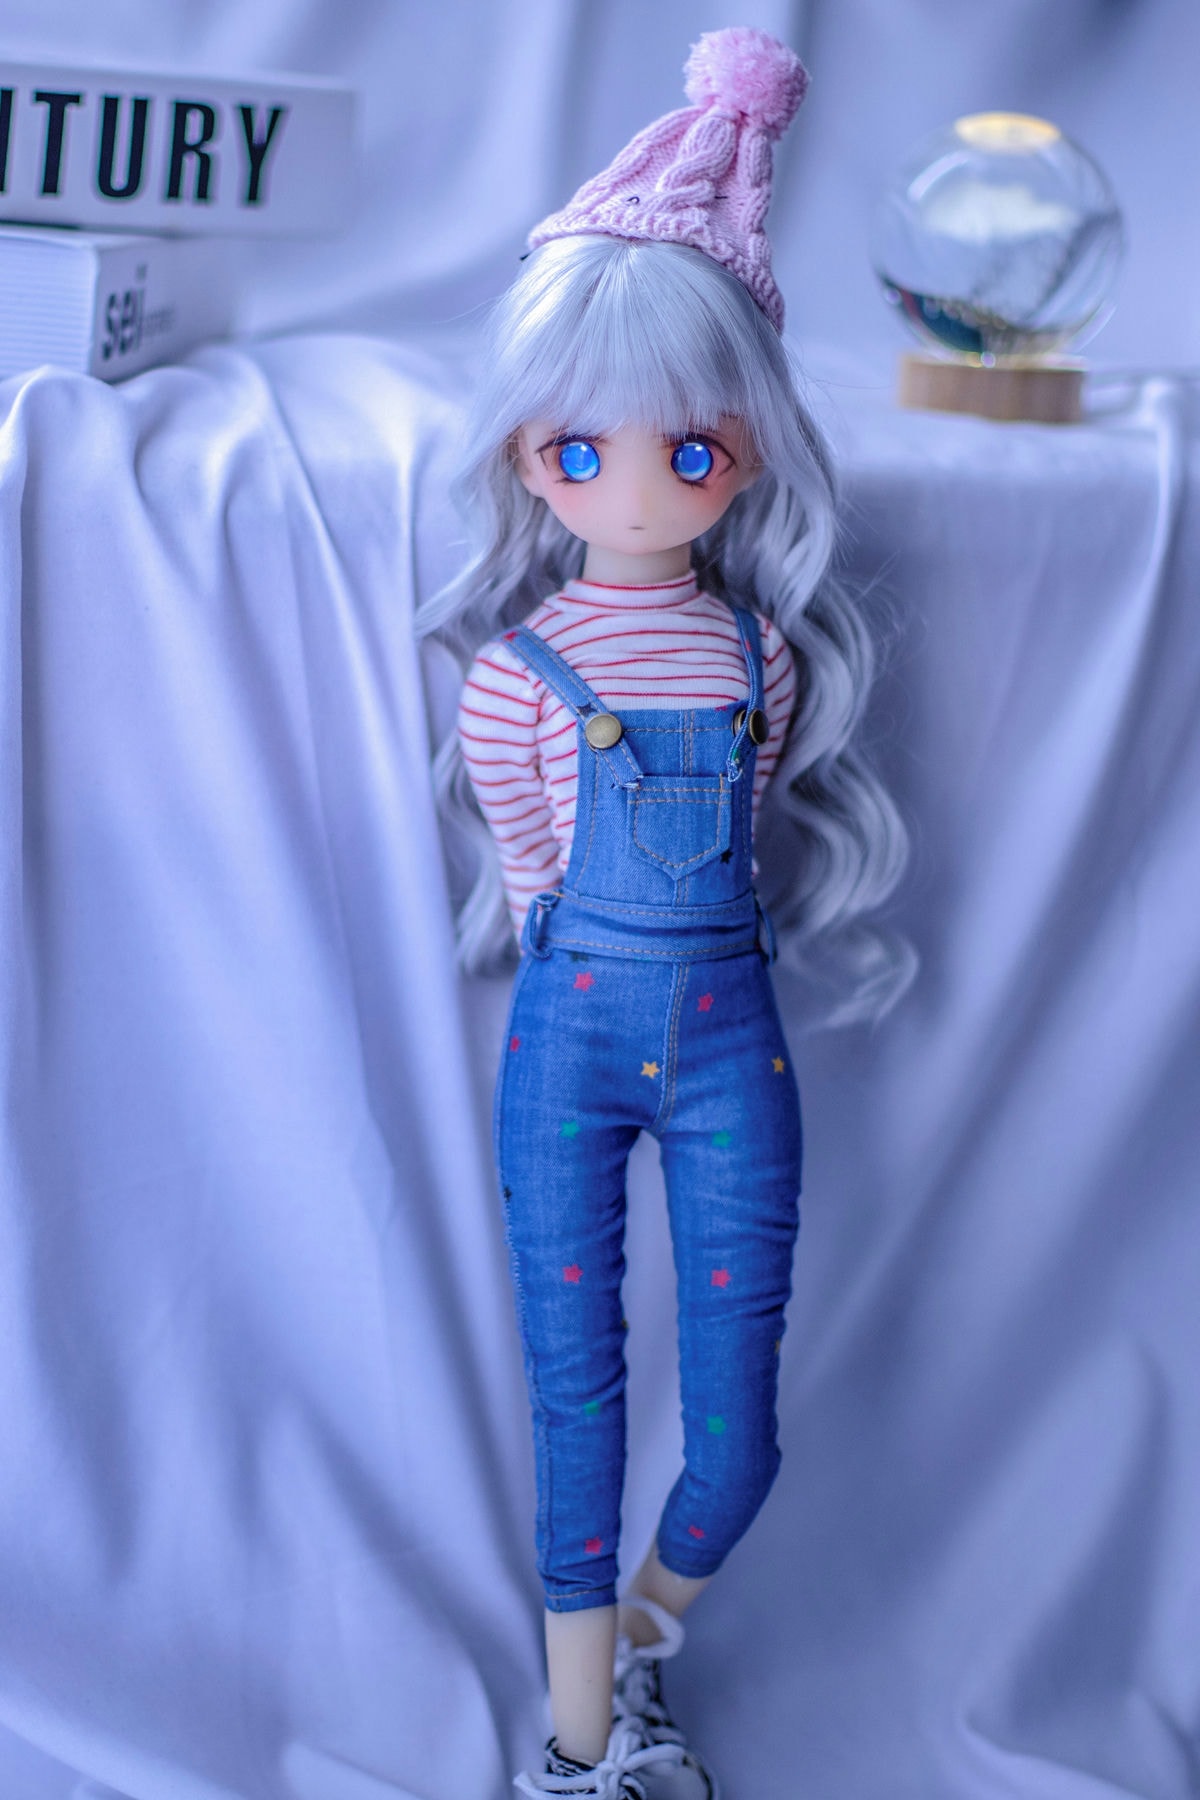 Amity – 1 stopa 3 (40 cm) duża pierś, mała figurka lalki anime